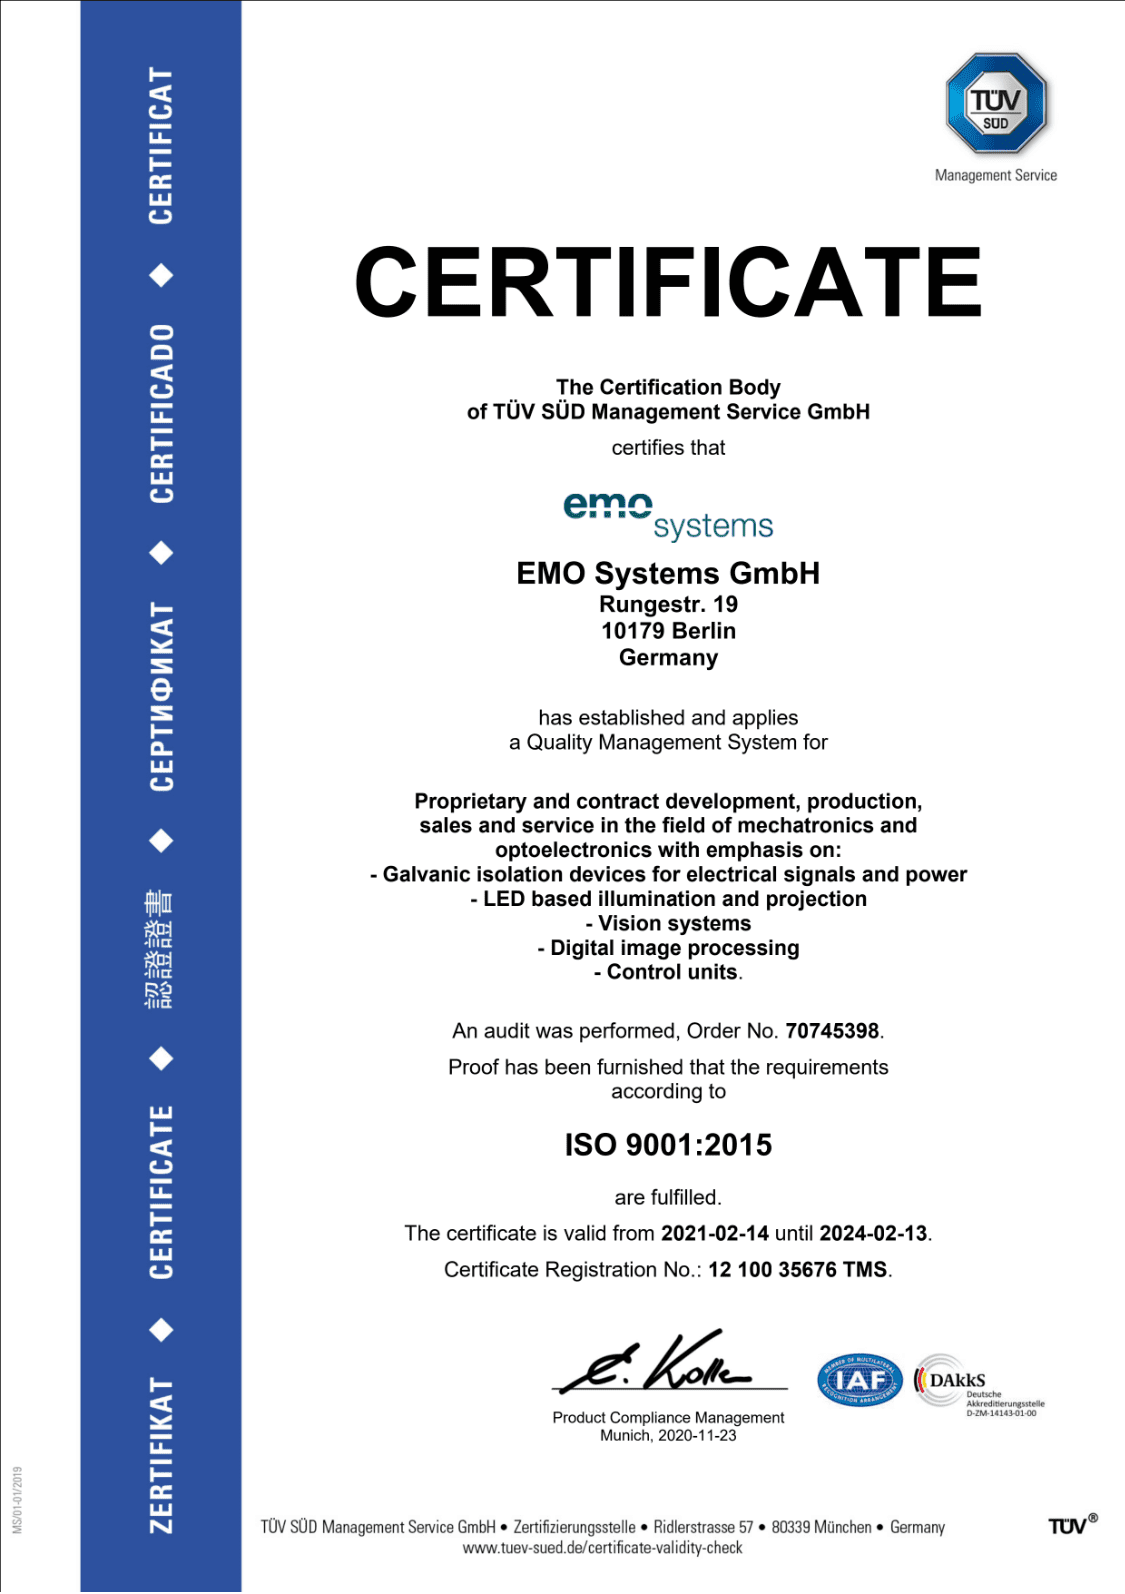 TÜV certificate DIN EN ISO 9001